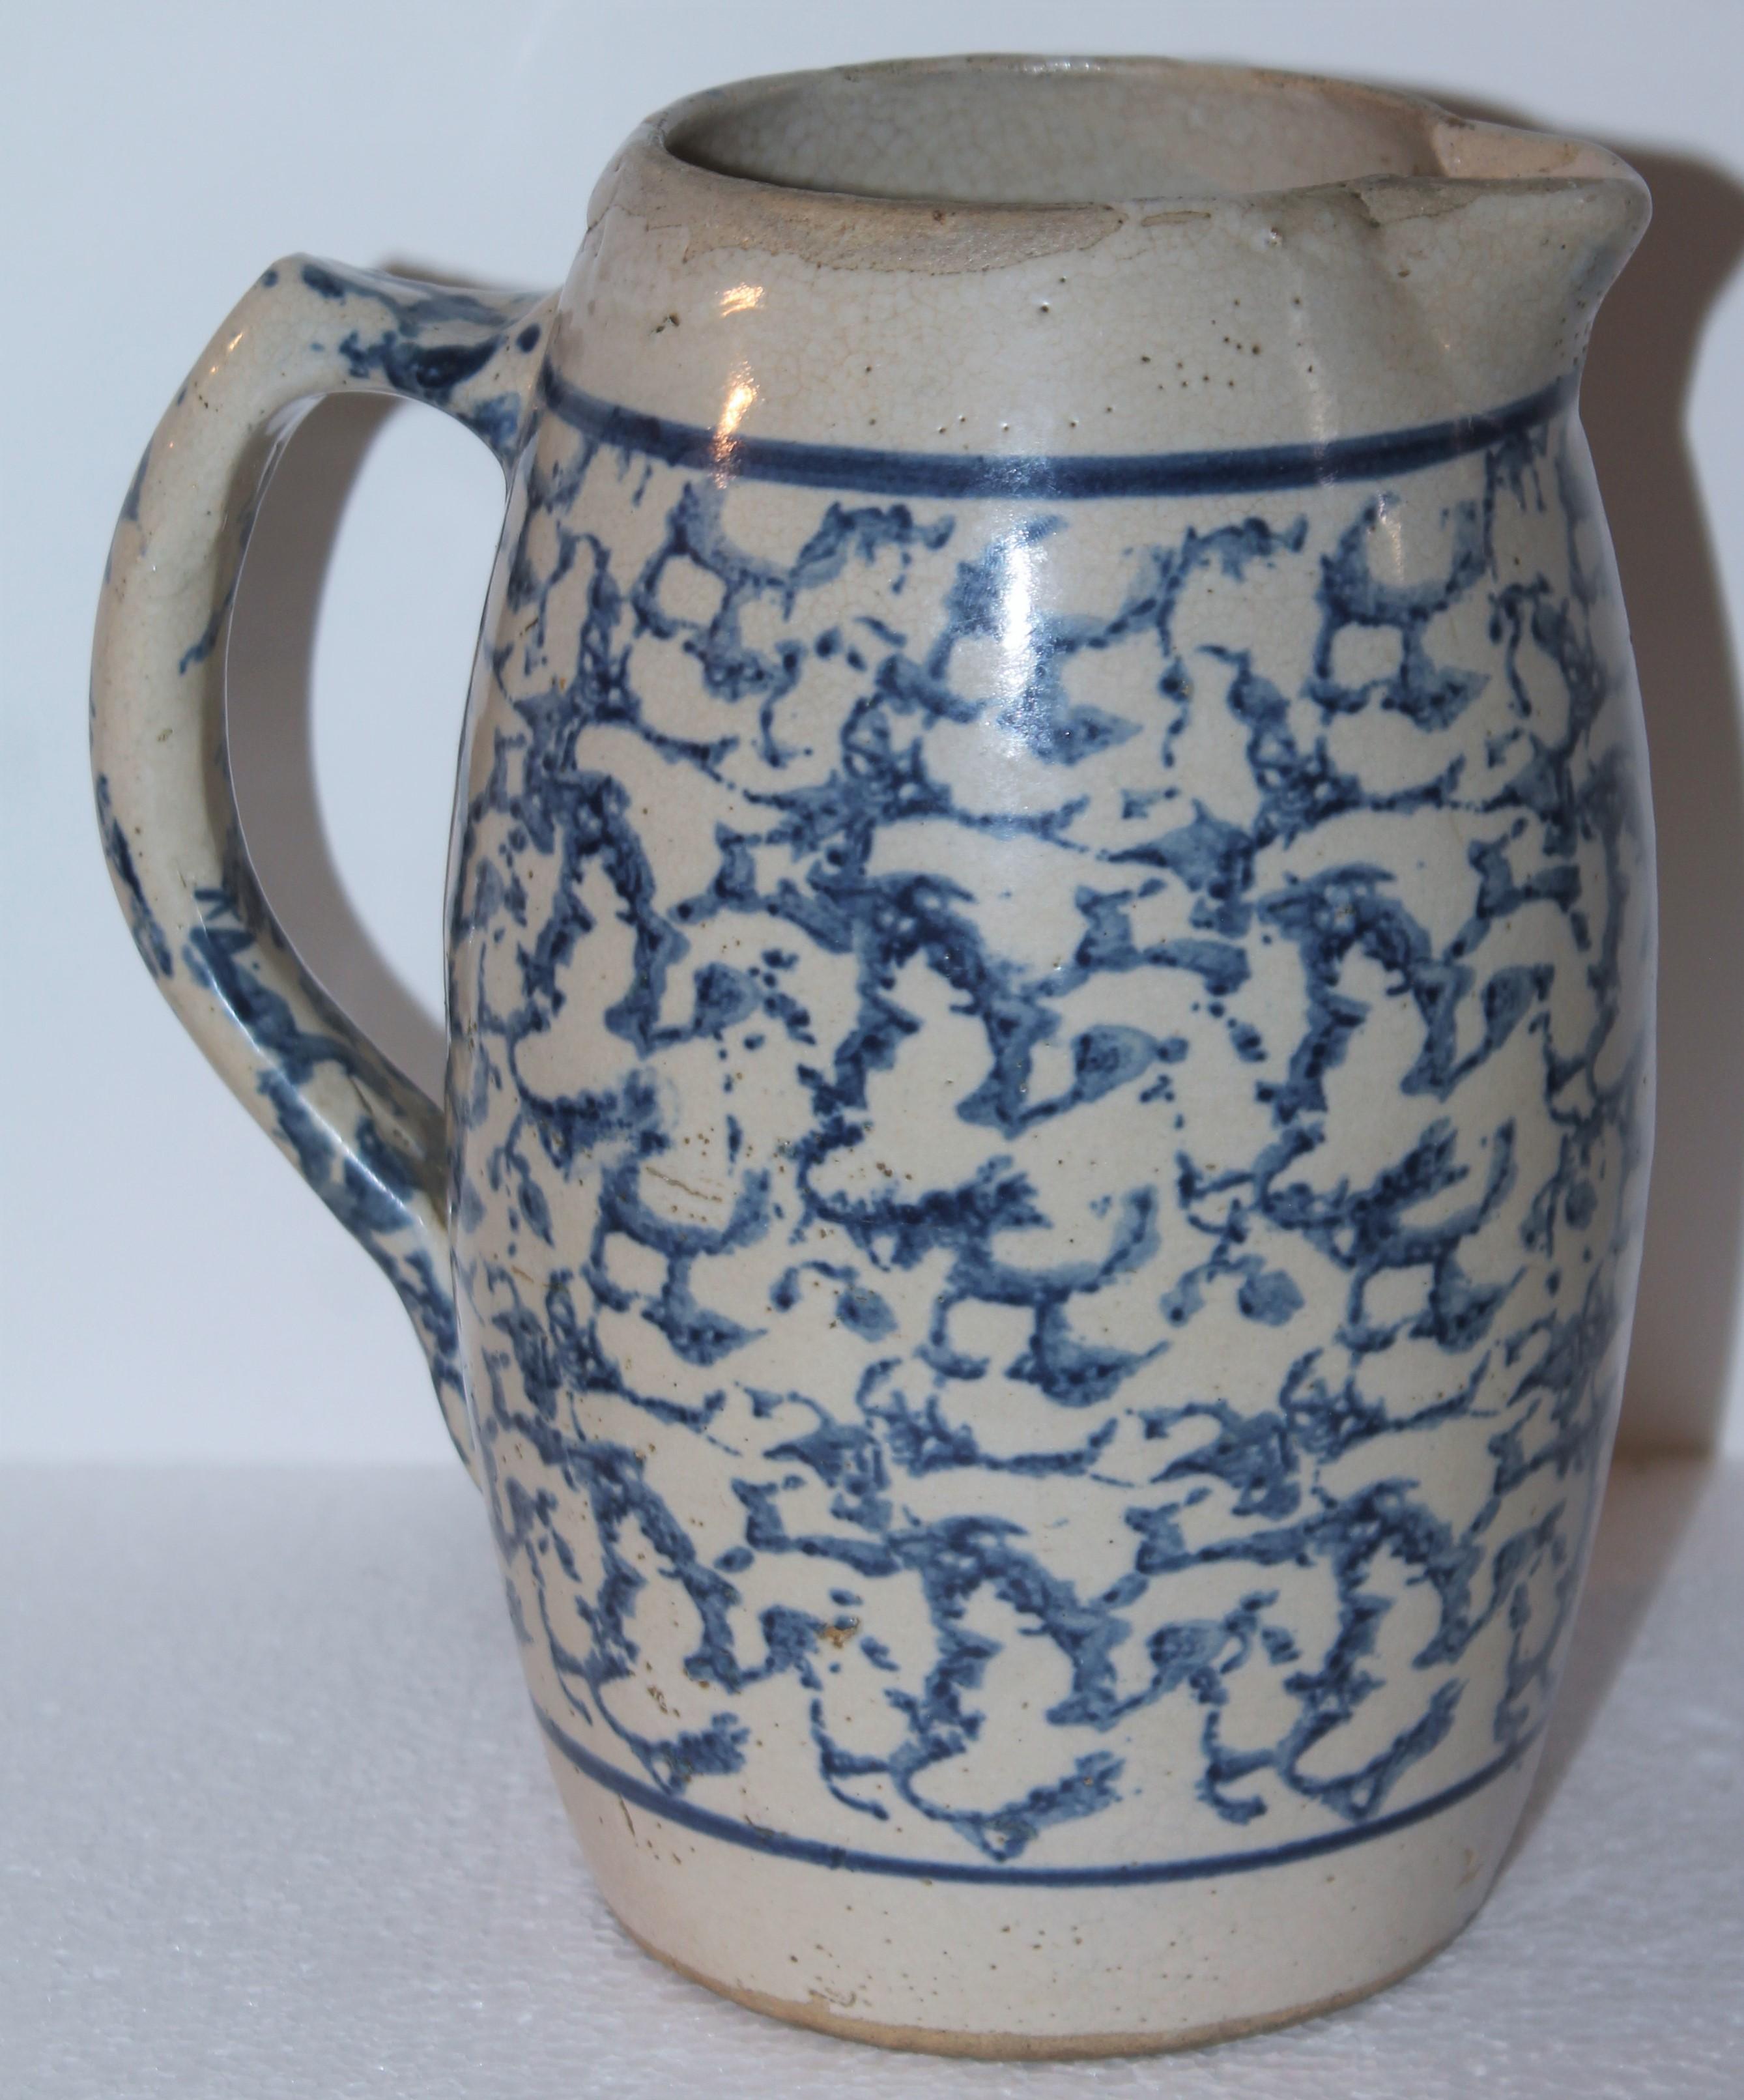 pichet en poterie bleu et blanc du 19e siècle en forme d'éponge. C'est un lanceur très difficile à trouver.